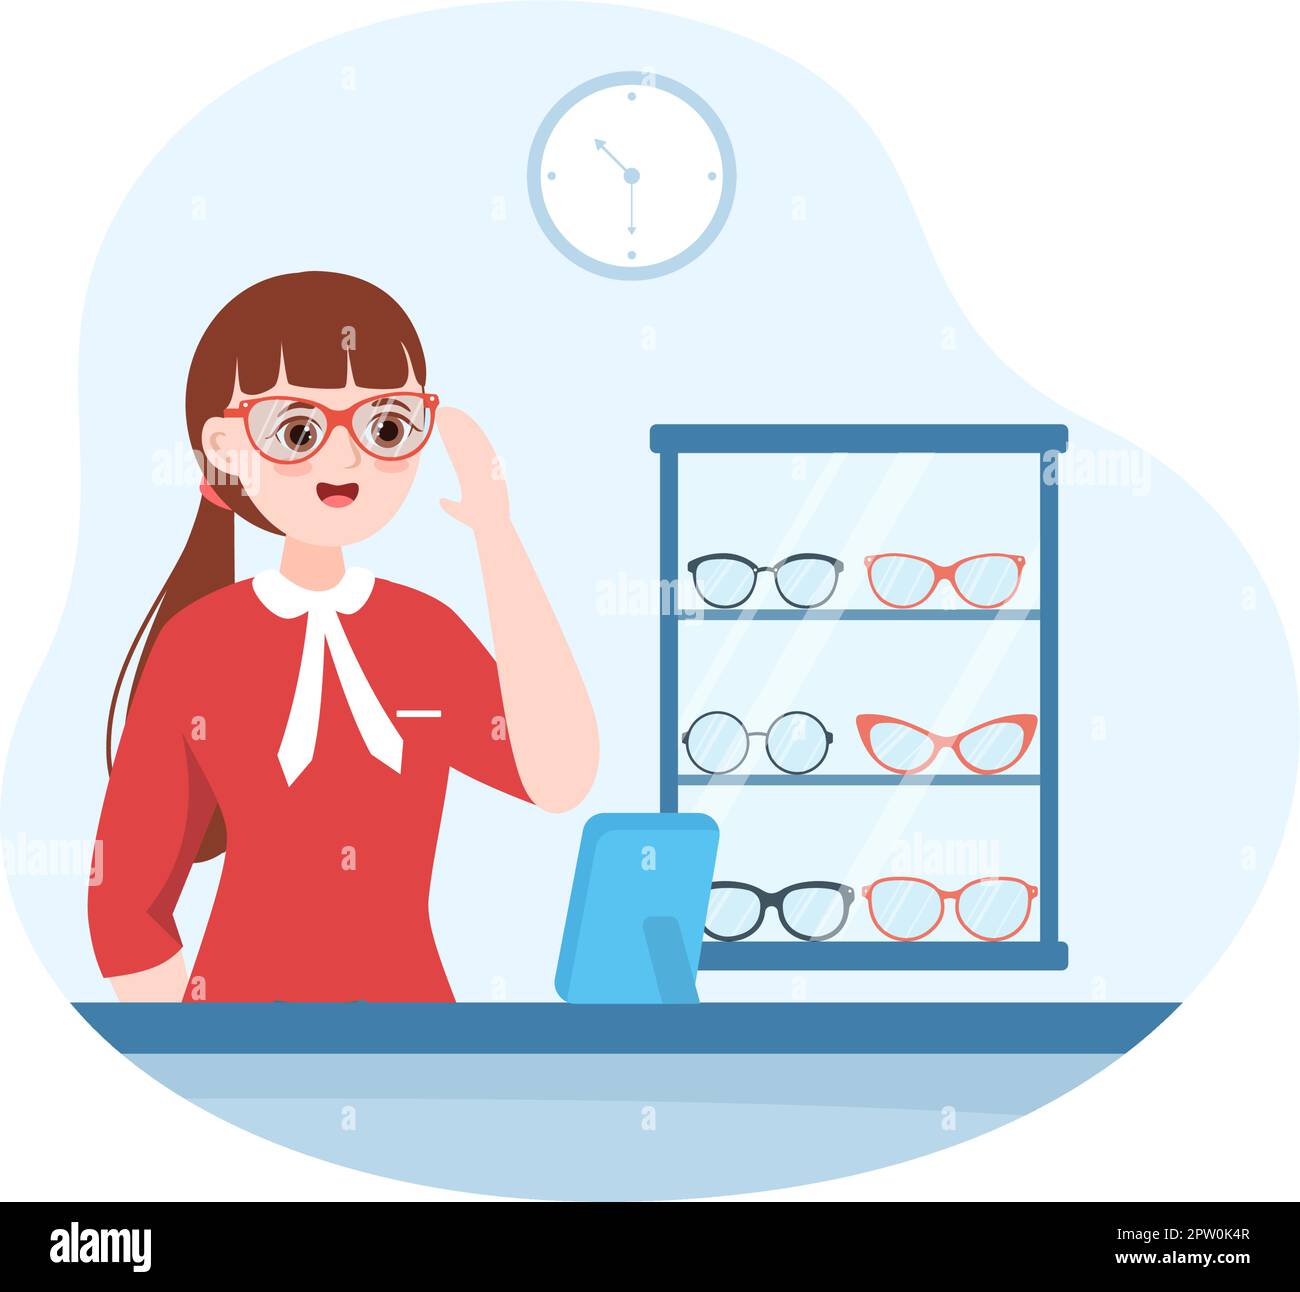 Brillen Shop oder Optical Shop mit Zubehör, Optiker, Kontrolle Vision und  Brillen in Flat Cartoon Hand Drawn Templates Illustration Stock-Vektorgrafik  - Alamy